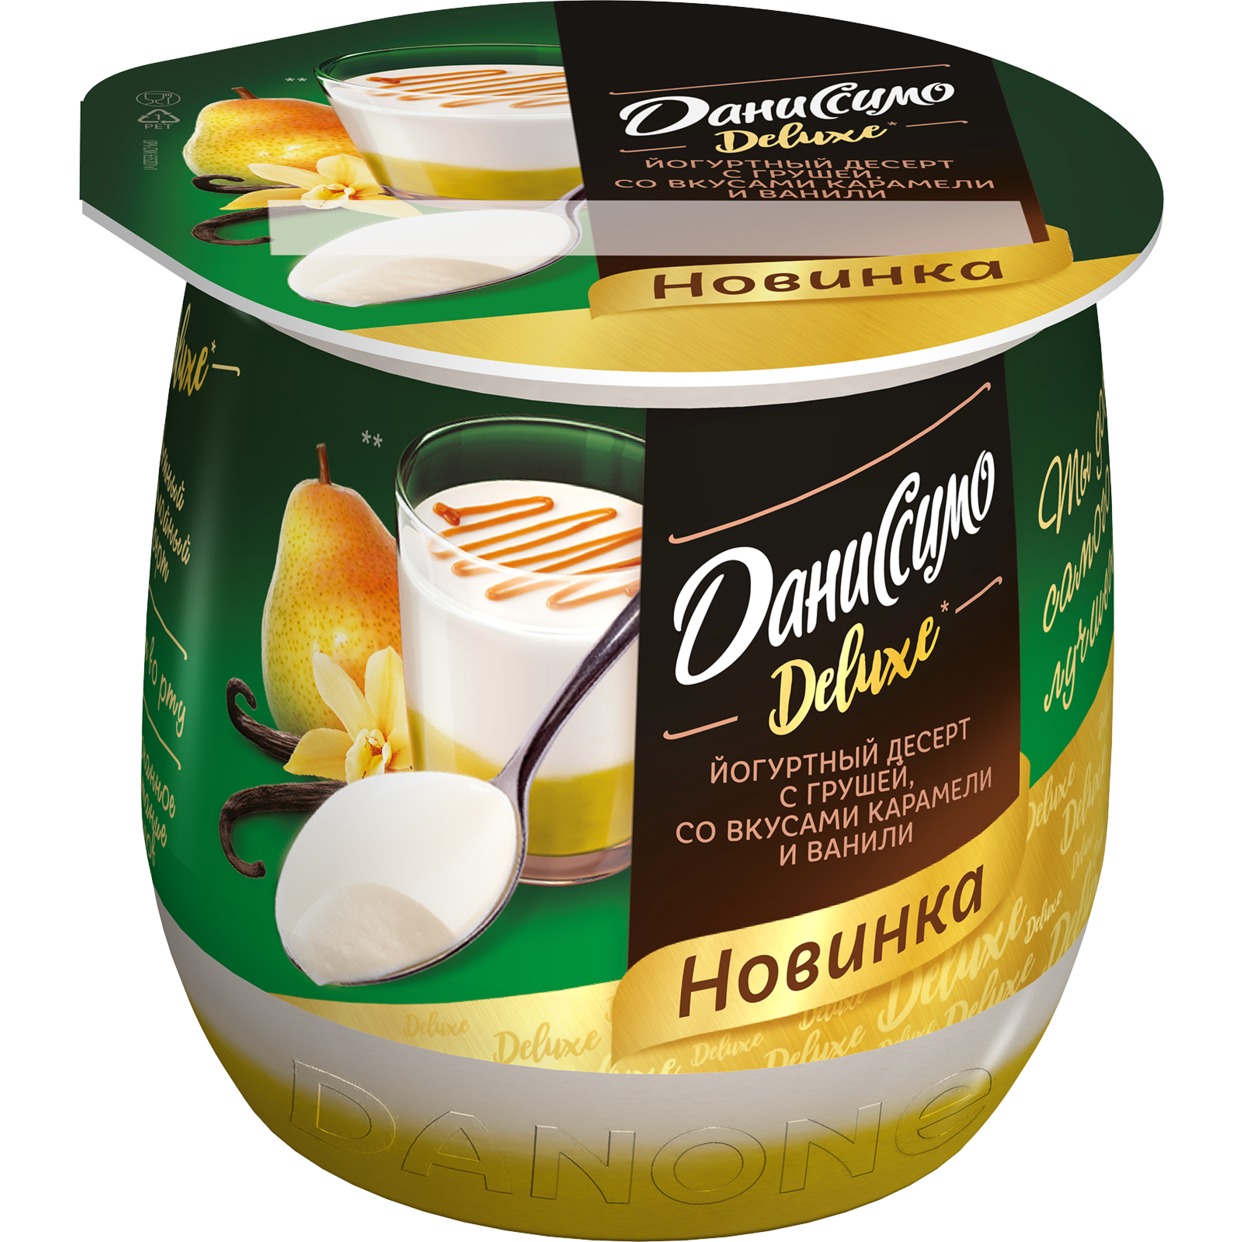 Даниссимо десерт кисломолочный йогуртный термостатный с грушей, со вкусами ванили и карамели «Deluxe Пудинг», 4,2% 160г по акции в Пятерочке